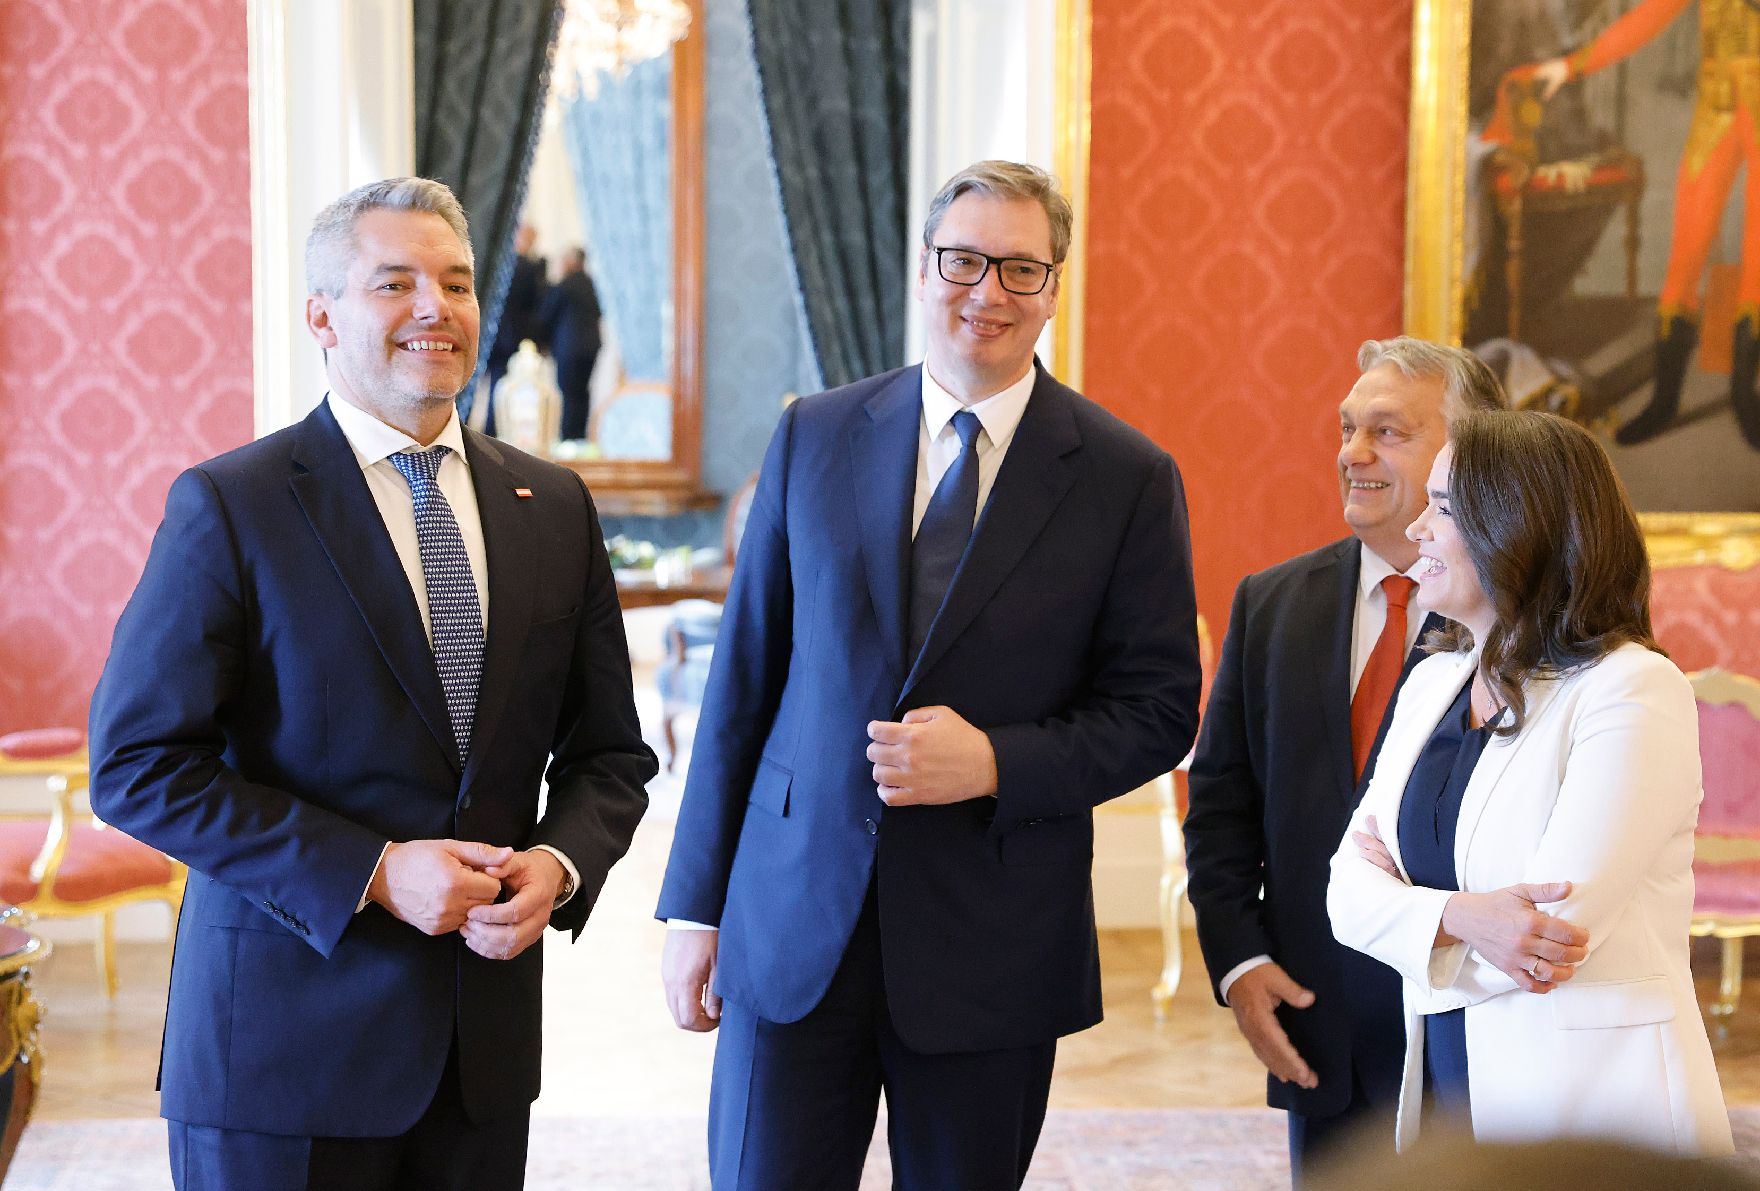 Am 3. Oktober 2022 nahm Bundeskanzler Karl Nehammer (l.) an der Migrationskonferenz in Budapest teil. Im Bild mit dem ungarischen Premierminister Viktor Orban (3.v.l.) und dem serbischen Präsidenten Aleksandar Vucic (2.v.l.)und der ungarischen Präsidentin Katalin Novak (r.)